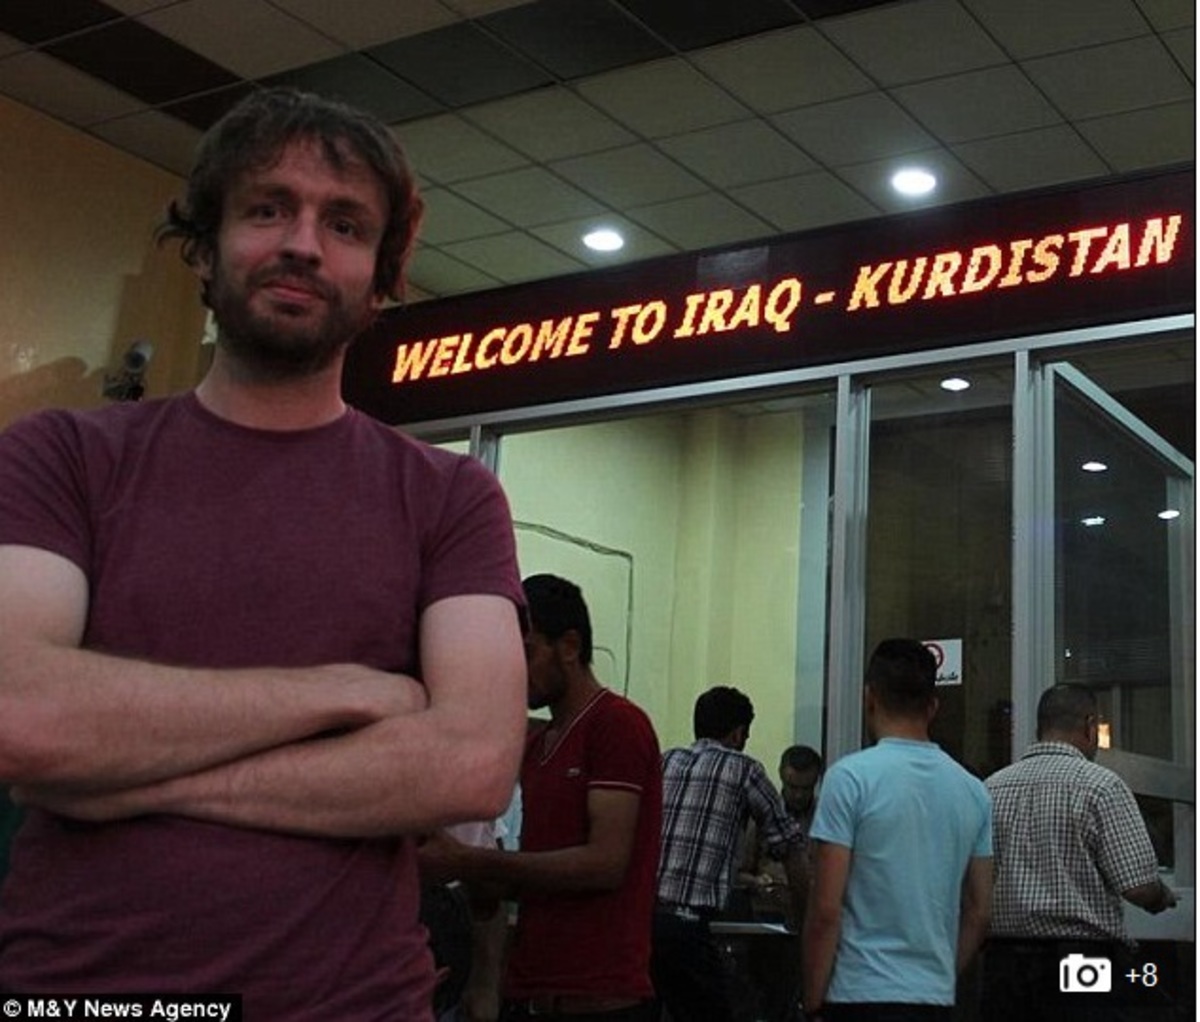 Απίστευτο! Αυτός ο τύπος οργανώνει ταξίδια στο Ιράκ όπου αλωνίζουν οι τζιχαντιστές!